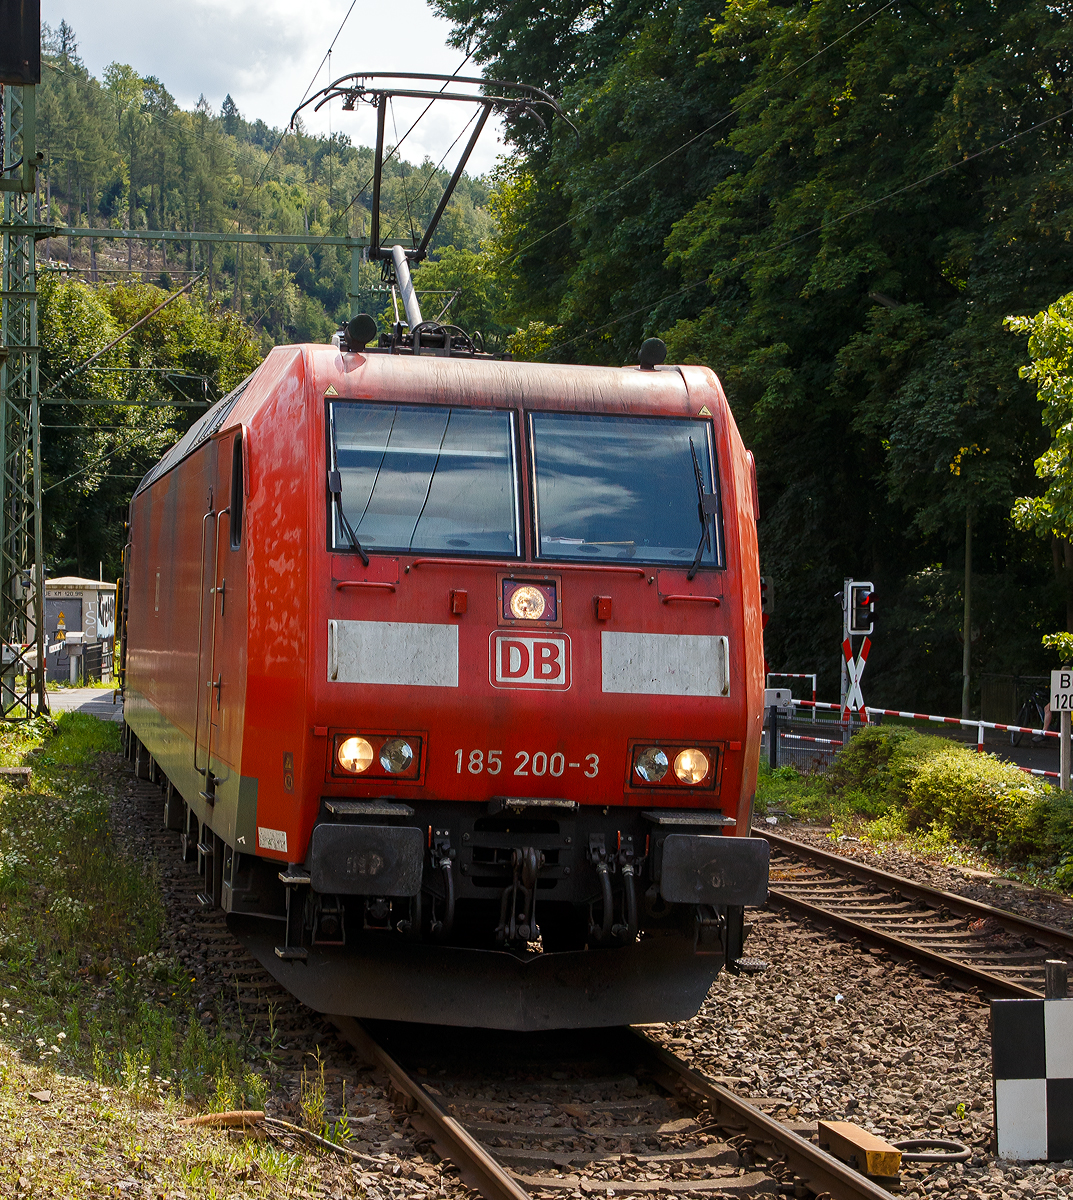 Die 185 200-3 (91 80 6185 200-3 D-DB) der DB Cargo AG fährt am 21.08.2021 mit einem gemischten Güterzug, durch Kirchen/Sieg in Richtung Siegen. (Aufnahme vom Bahnsteig).

Die TRAXX F140 AC1 wurde 2004 bei Bombardier in Kassel unter der Fabriknummer 33711 gebaut. Sie war die letzte an die DB Cargo AG (damals Railion Deutschland AG) gelieferten der Serie TRAXX F140 AC1. Danach begann mit der 185 201-1 die Serie der TRAXX F140 AC2.

